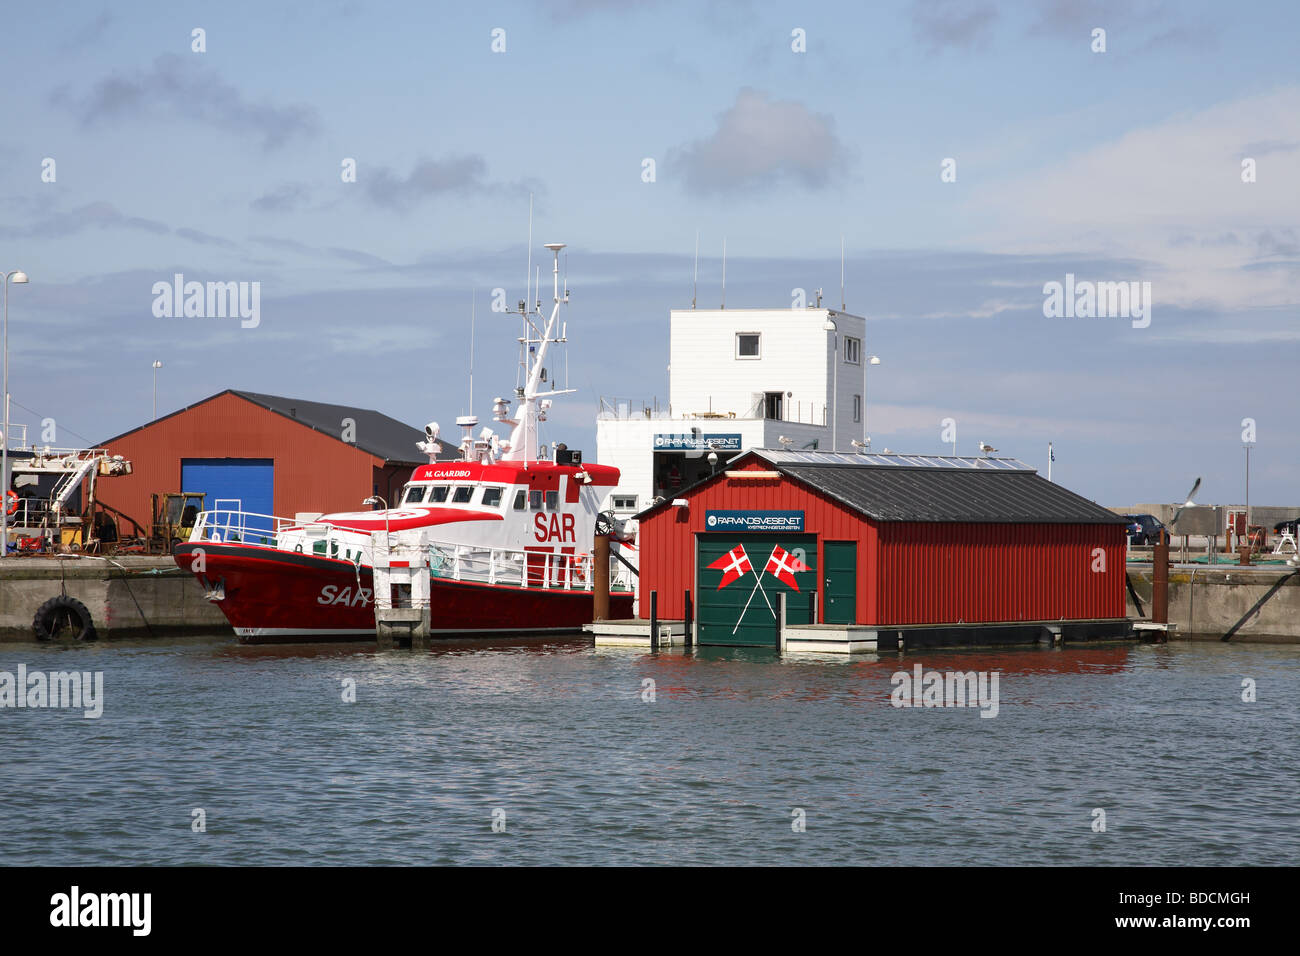 Eine traditionelle lebensrettende Station in den Hafen von Hanstholm im Nord-westlichen Teil von Jütland, Dänemark. Stockfoto